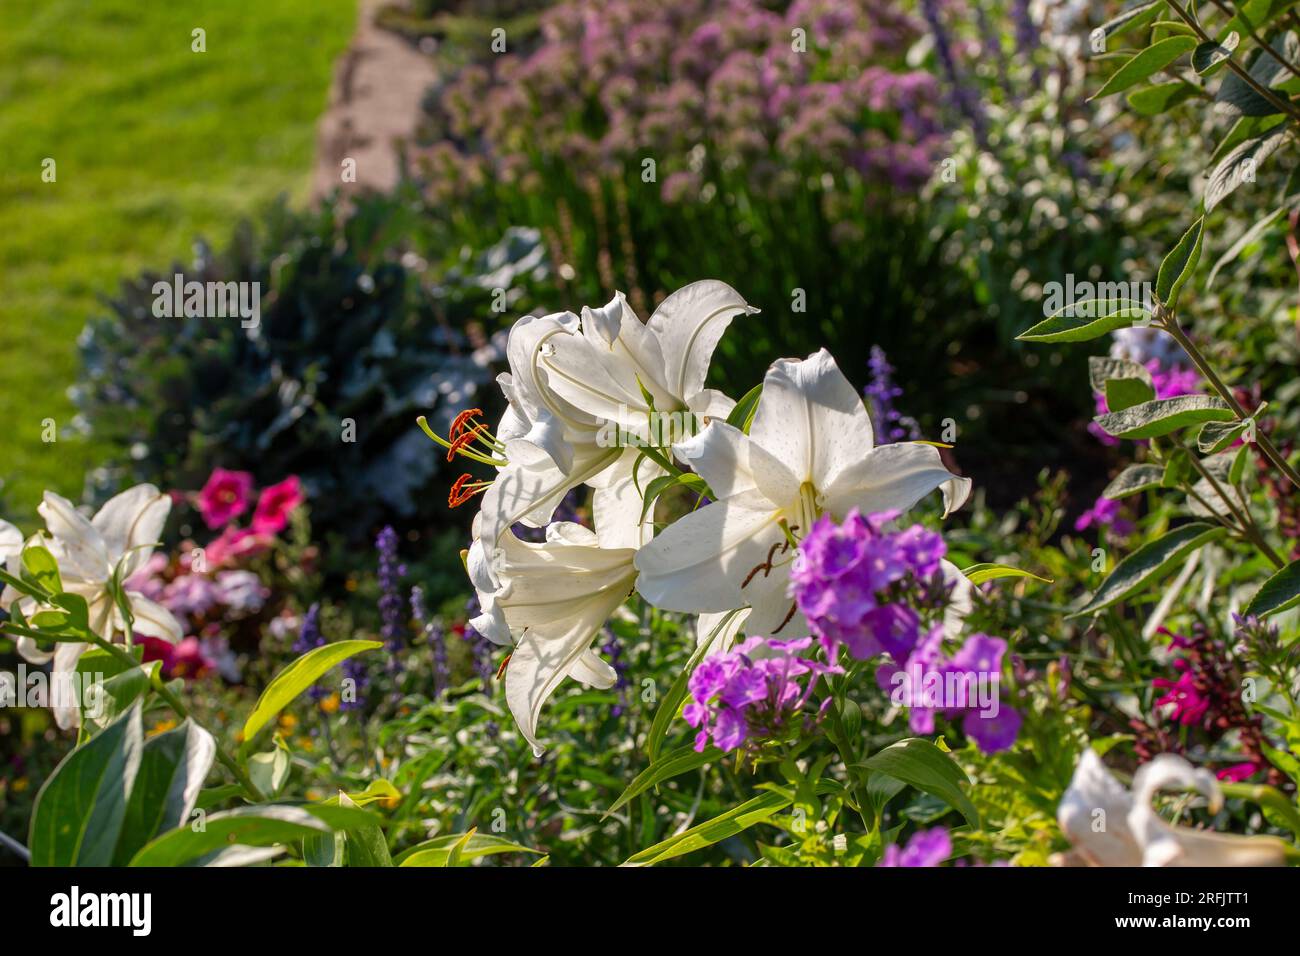 Vue rapprochée d'une plante de lys oriental (lilium) avec de belles grandes fleurs blanches, fleurissant dans un jardin ensoleillé en début de soirée Banque D'Images